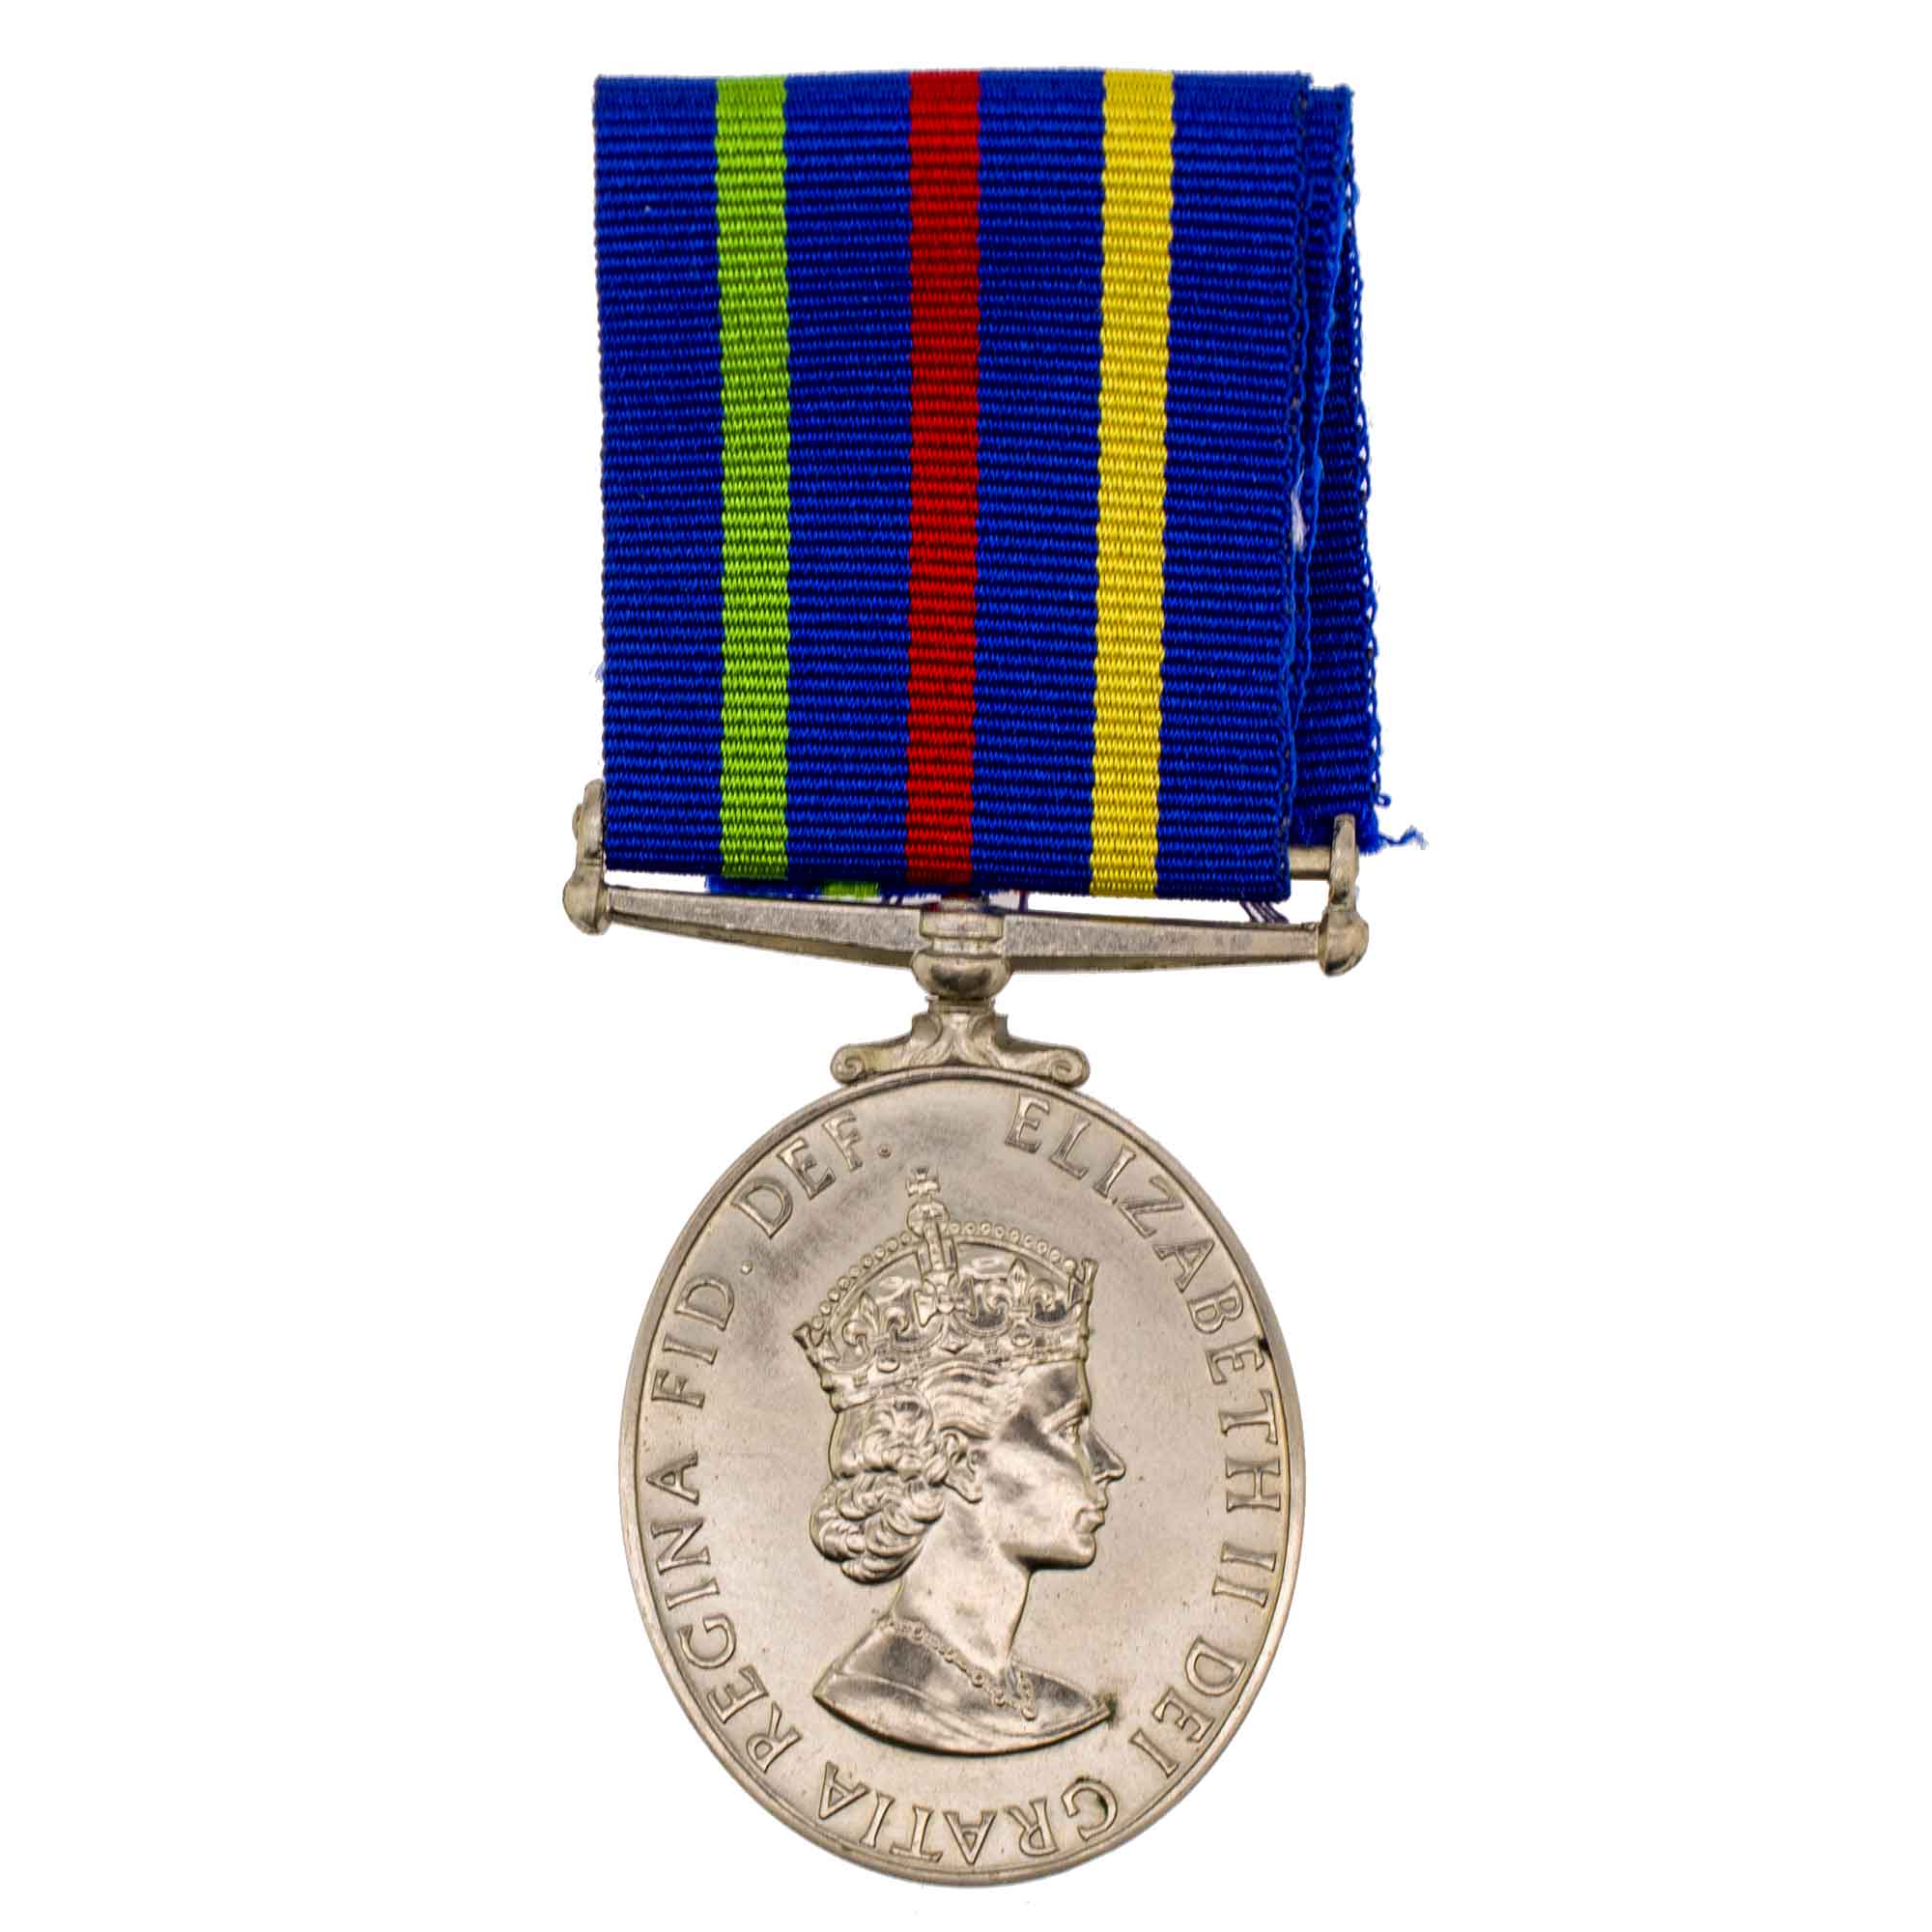 Великобритания. Медаль "За долгую службу в гражданской обороне"  до 1968 г. В оригинальном футляре. 